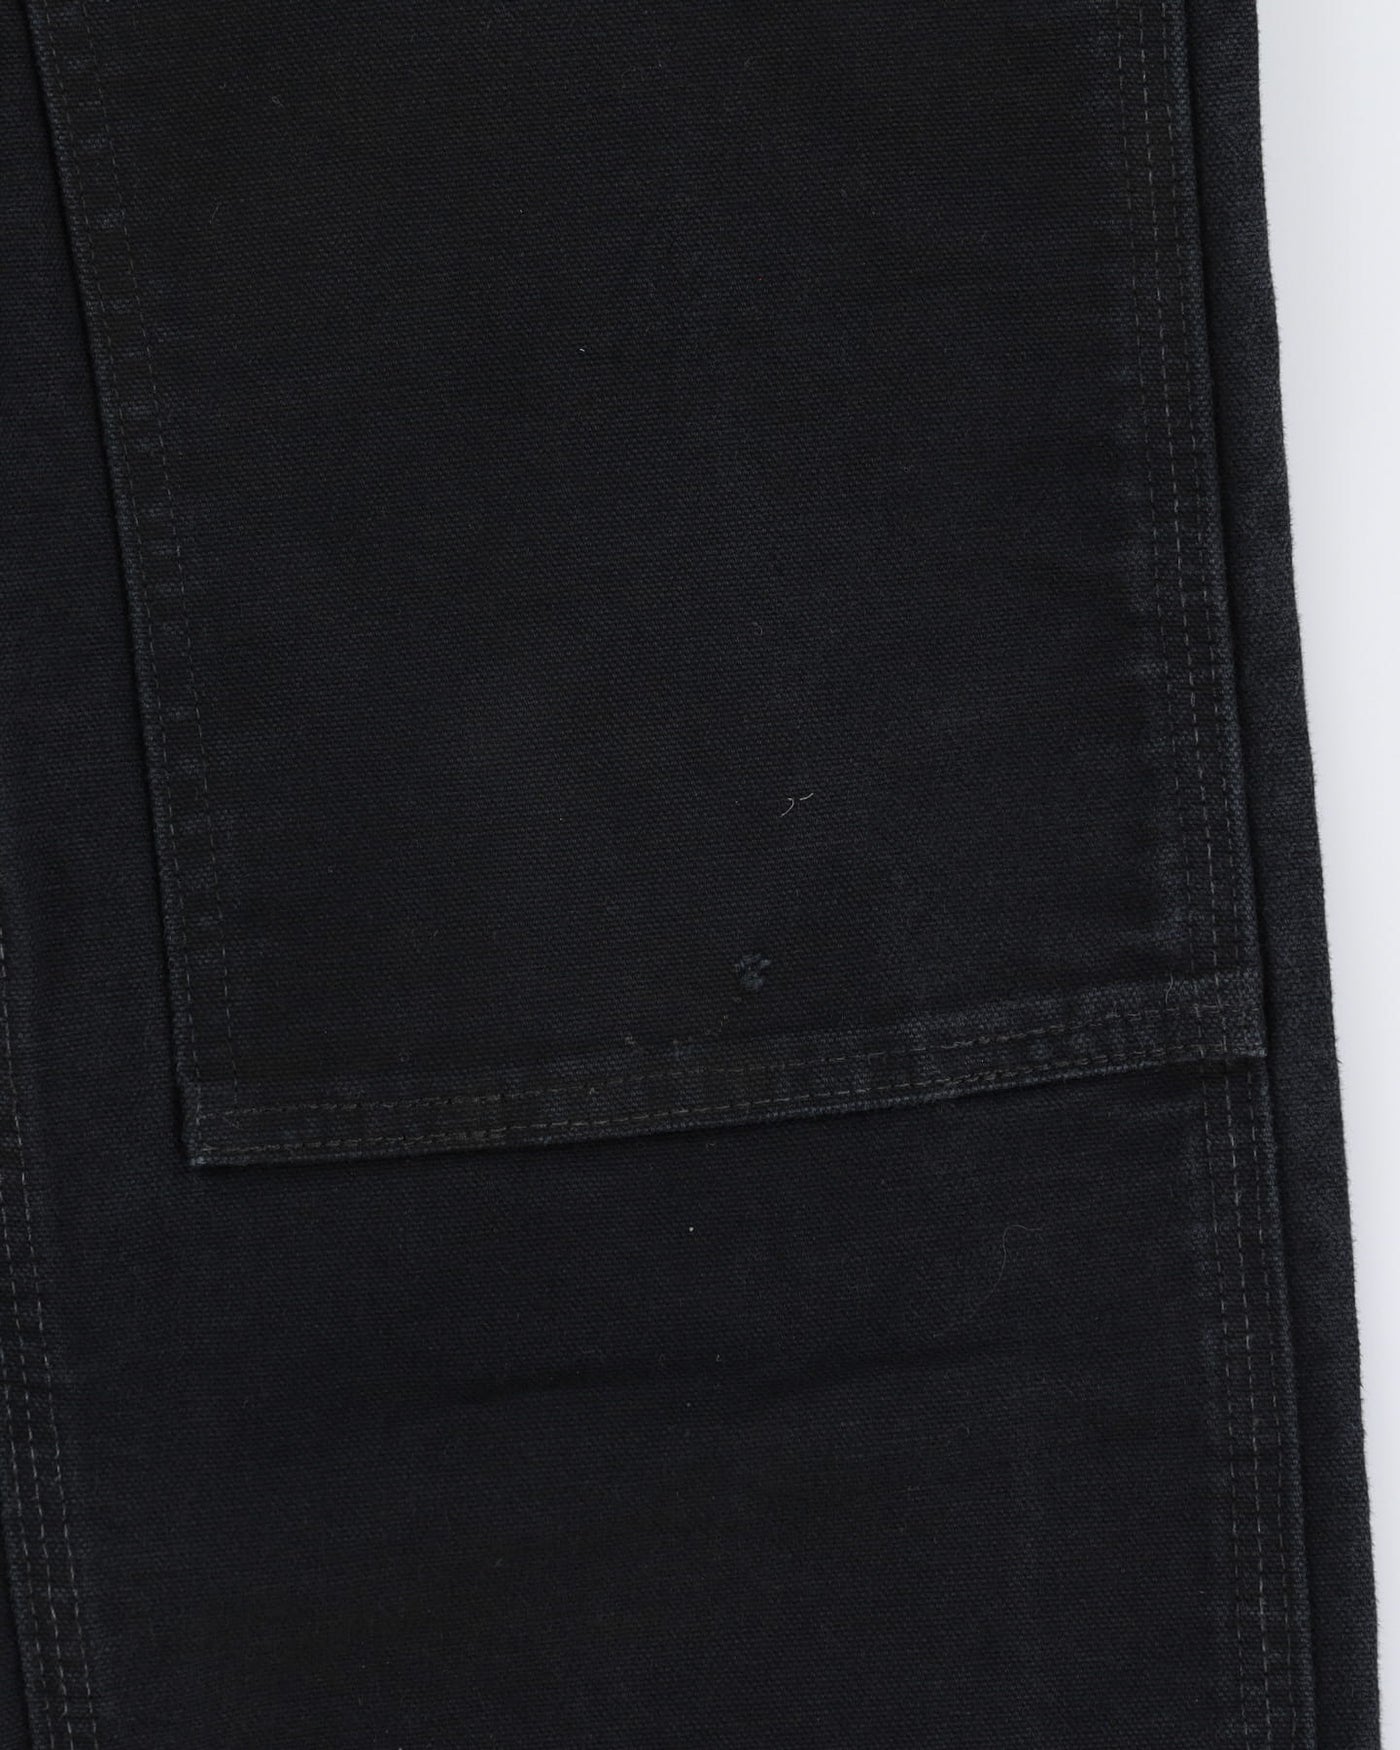 Carhartt Black Double Knee Workwear Jeans - W29 L32